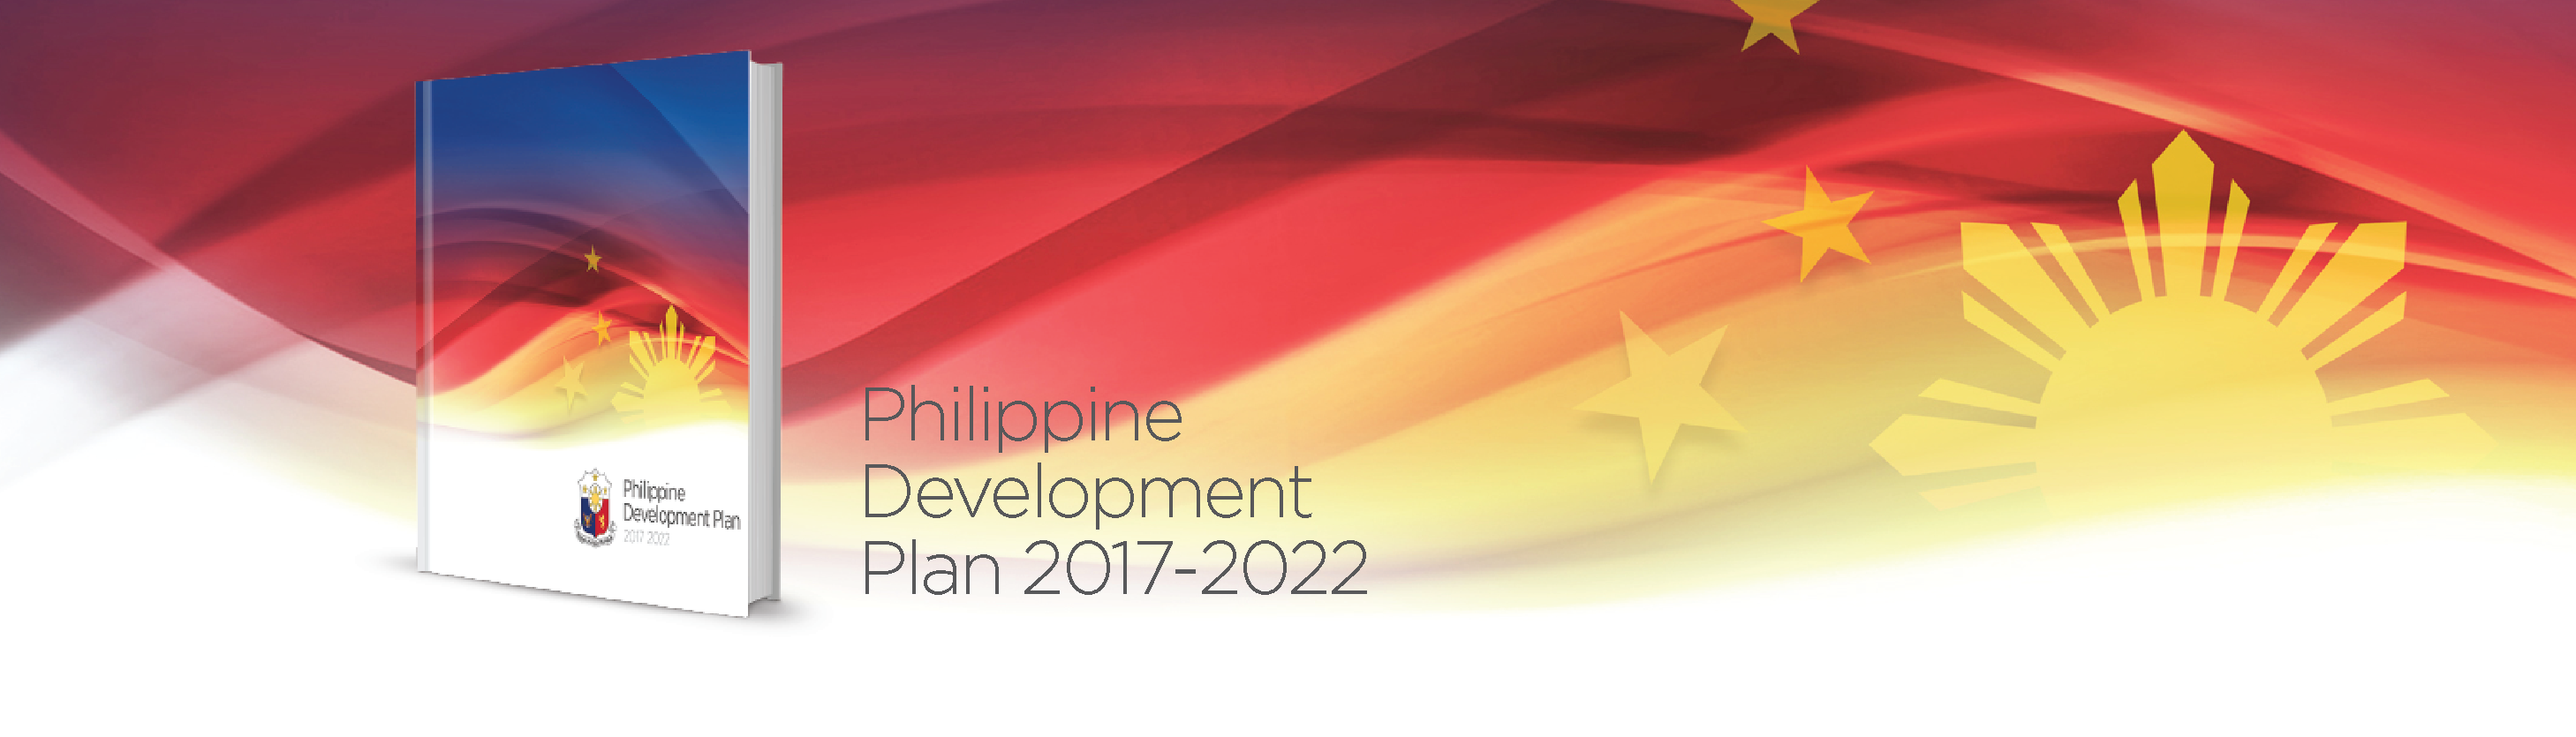 PDP 2017-2022-1400